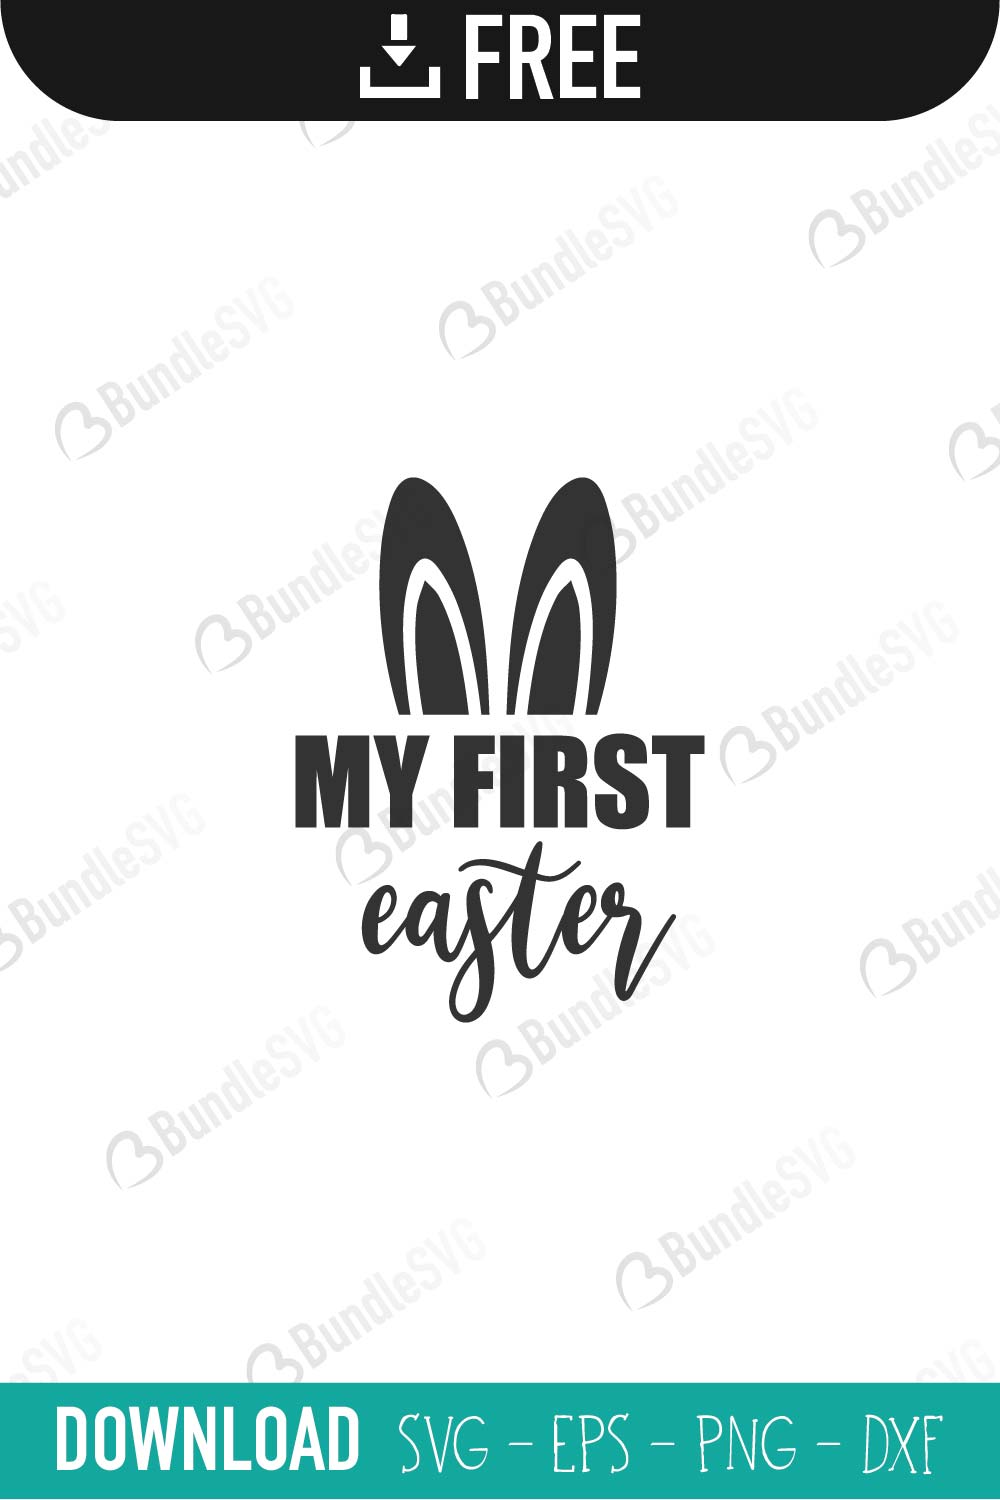 Download My First Easter SVG Free Download | BundleSVG.com